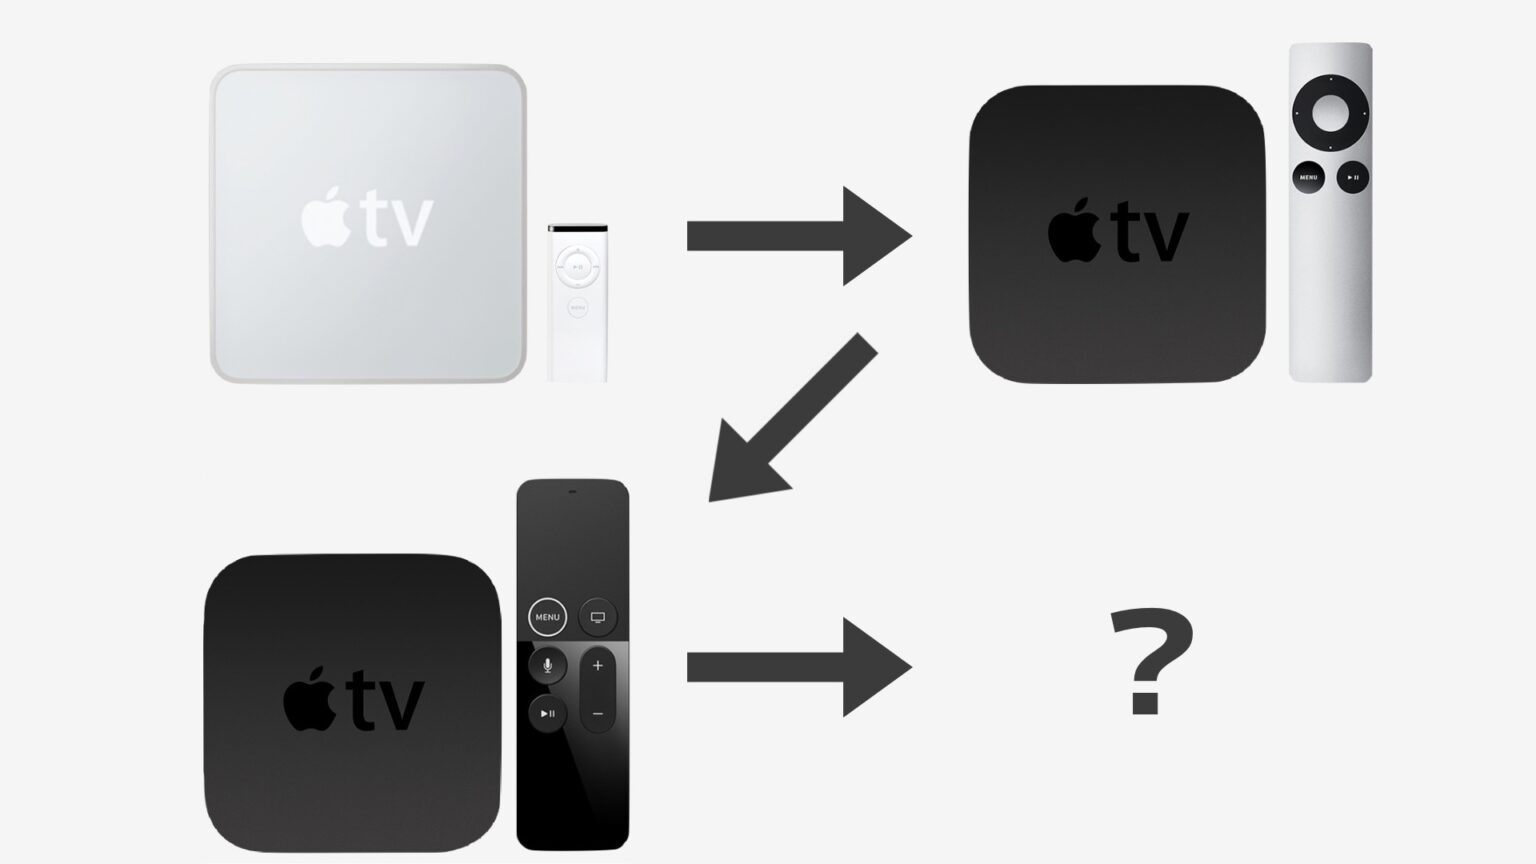 「Apple TV 4K」の新型は2021年末？いつになれば発売されるのか【発表済み】 | アーリーテックス